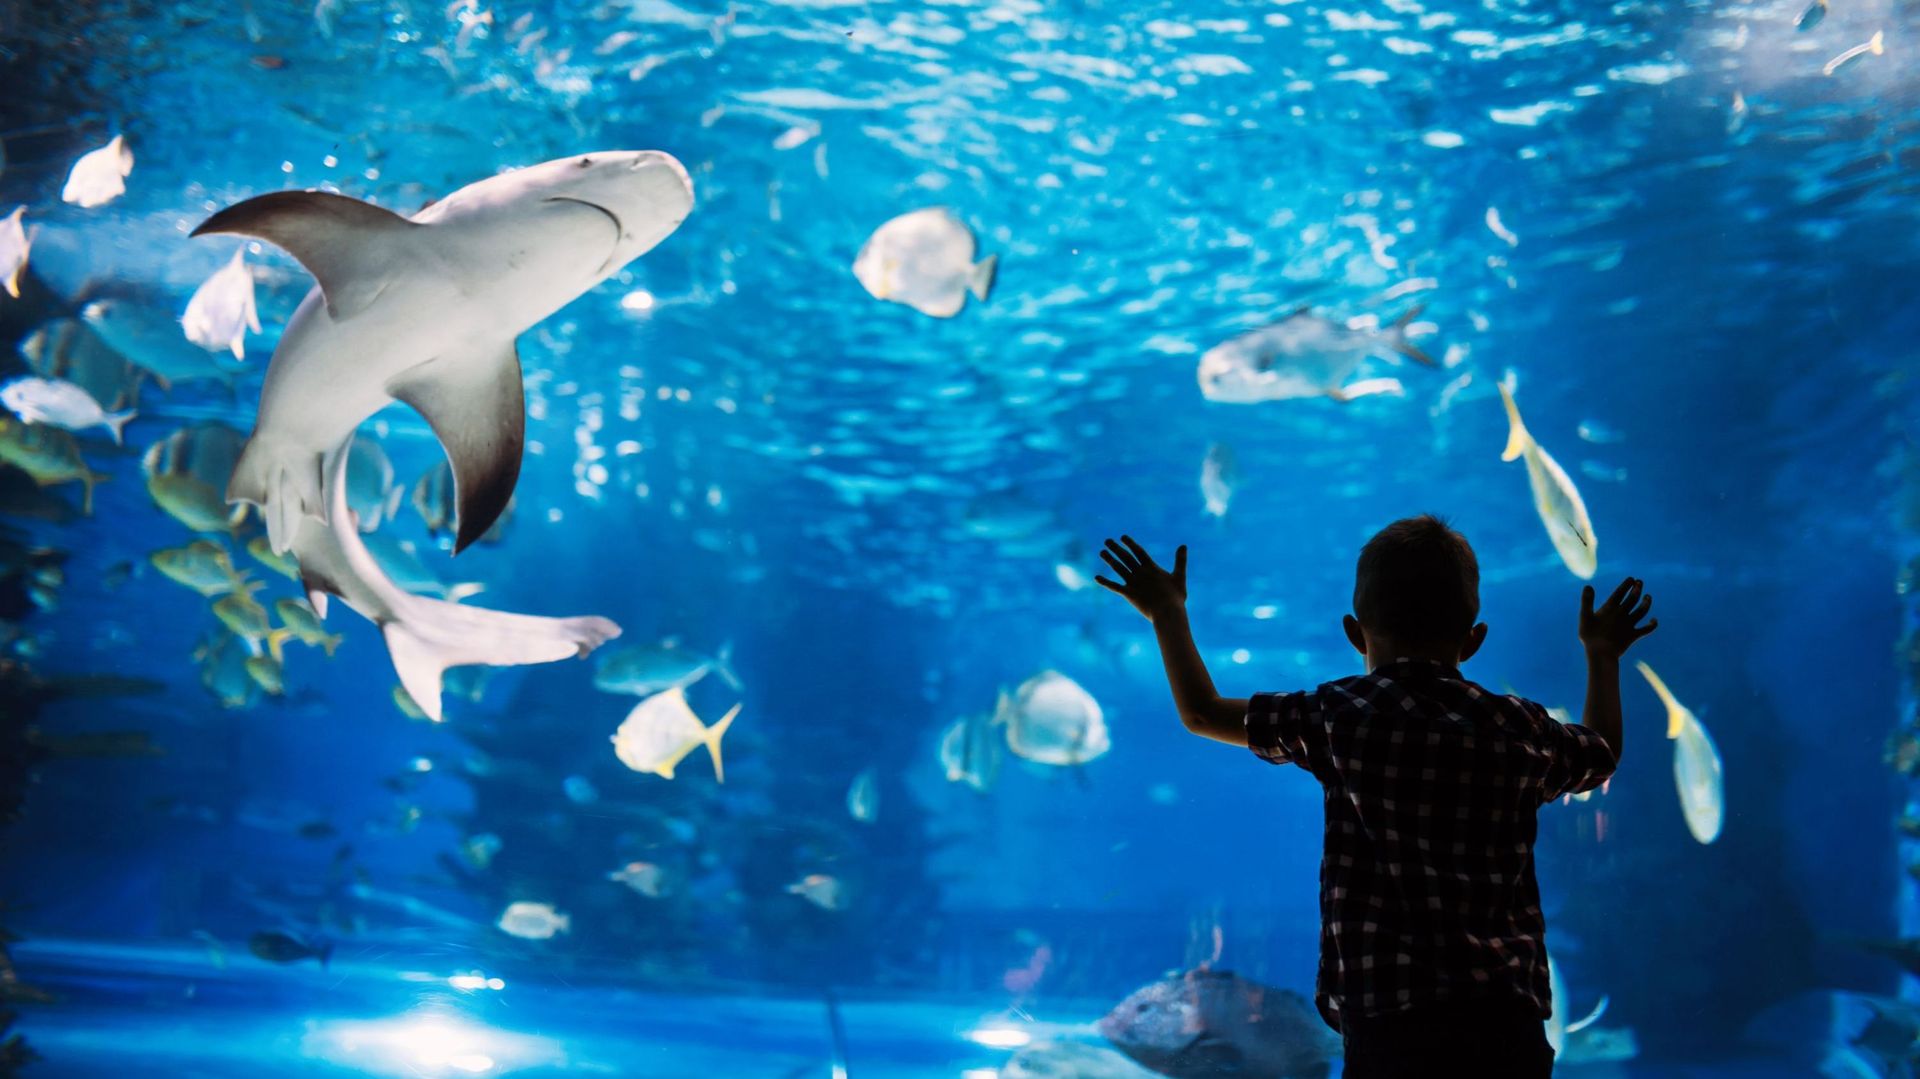 Idée d'activité pour l'été : le plus grand aquarium d'Europe - image d'illustration